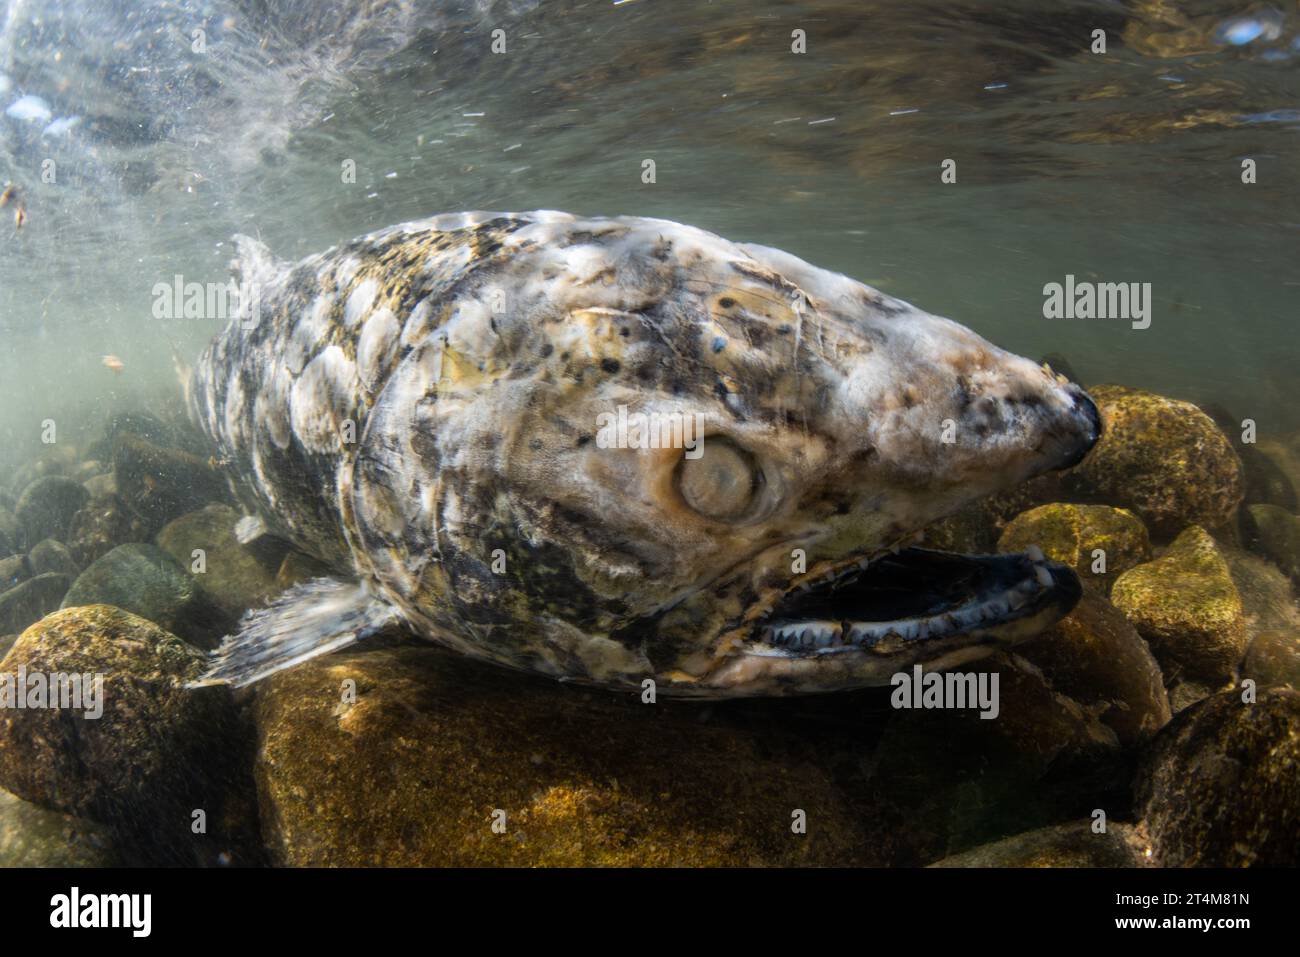 Salmone Chinook morente (Oncorhynchus tshawytscha), questi pesci muoiono dopo essere migrati in acqua dolce e aver riprodotto le uova per completare il loro ciclo di vita. Foto Stock